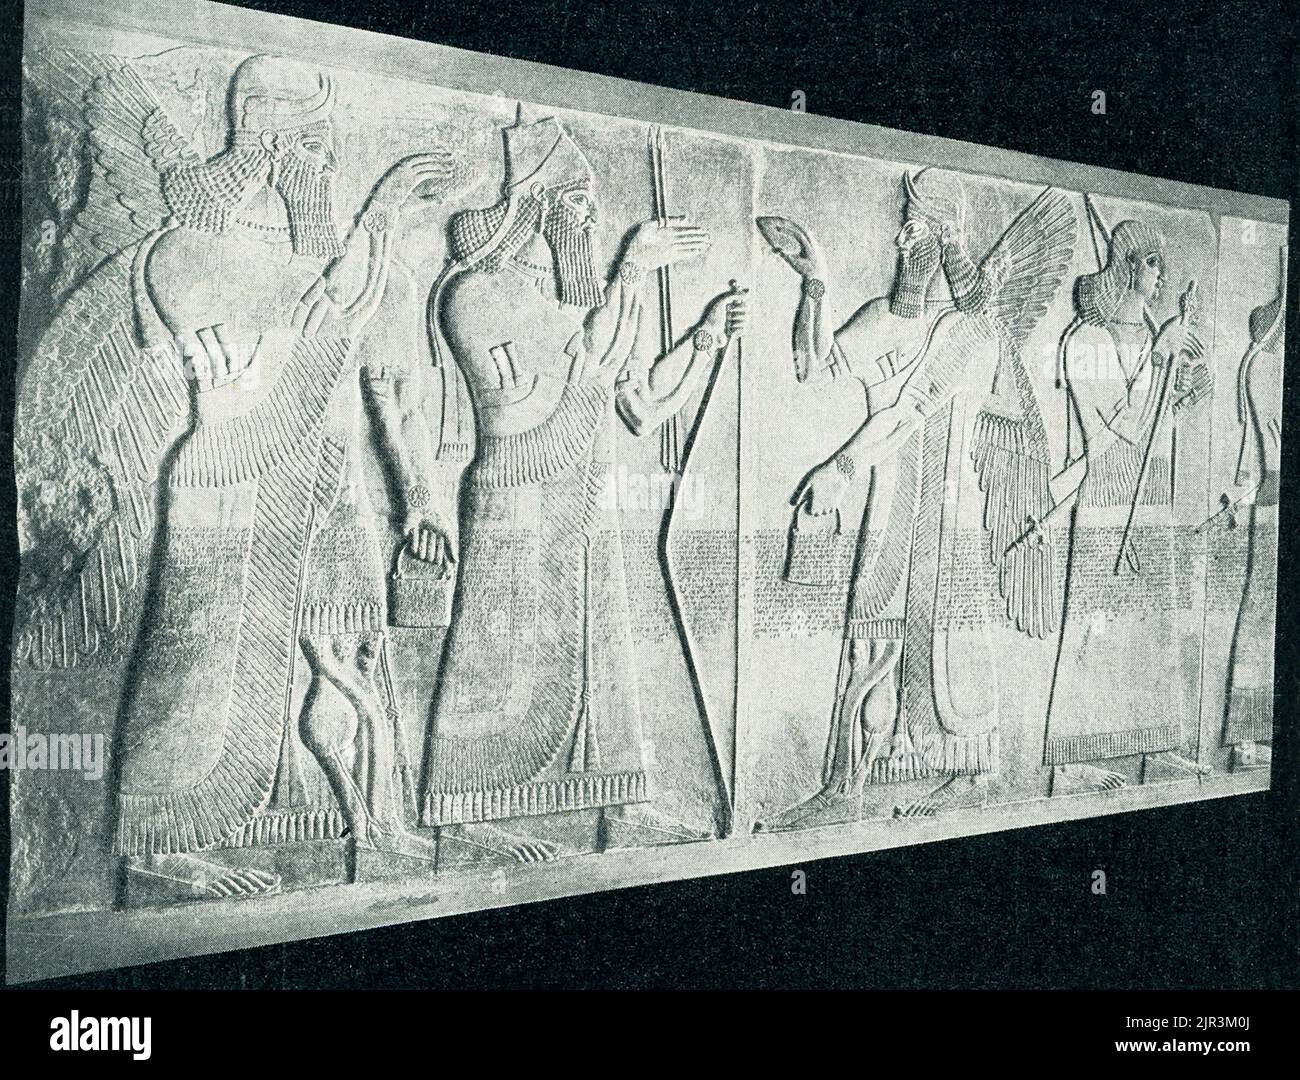 La légende de 1910 se lit comme suit : « le roi assyrien entre génie - au Musée royal de Berlin. La figure de gardien mythique assyrienne, appelée Genius, porte un casque à deux cornes et un vêtement à franges et porte un poignard à double manche, tous les attributs de sa nature divine. Ses mains gestuelle protectivement vers un arbre à fleurs, juste visible sur le bord droit de la sculpture. Ce relief, une fois peint avec éclat, est un fragment du palais du Nord-Ouest construit par le roi assyrien Ashirnasirpal II (883—859 BCE) dans sa capitale, Kalhu, aujourd'hui la ville irakienne de Nimrud. Des dizaines d'immenses dalles de pierre sculptées avec Banque D'Images